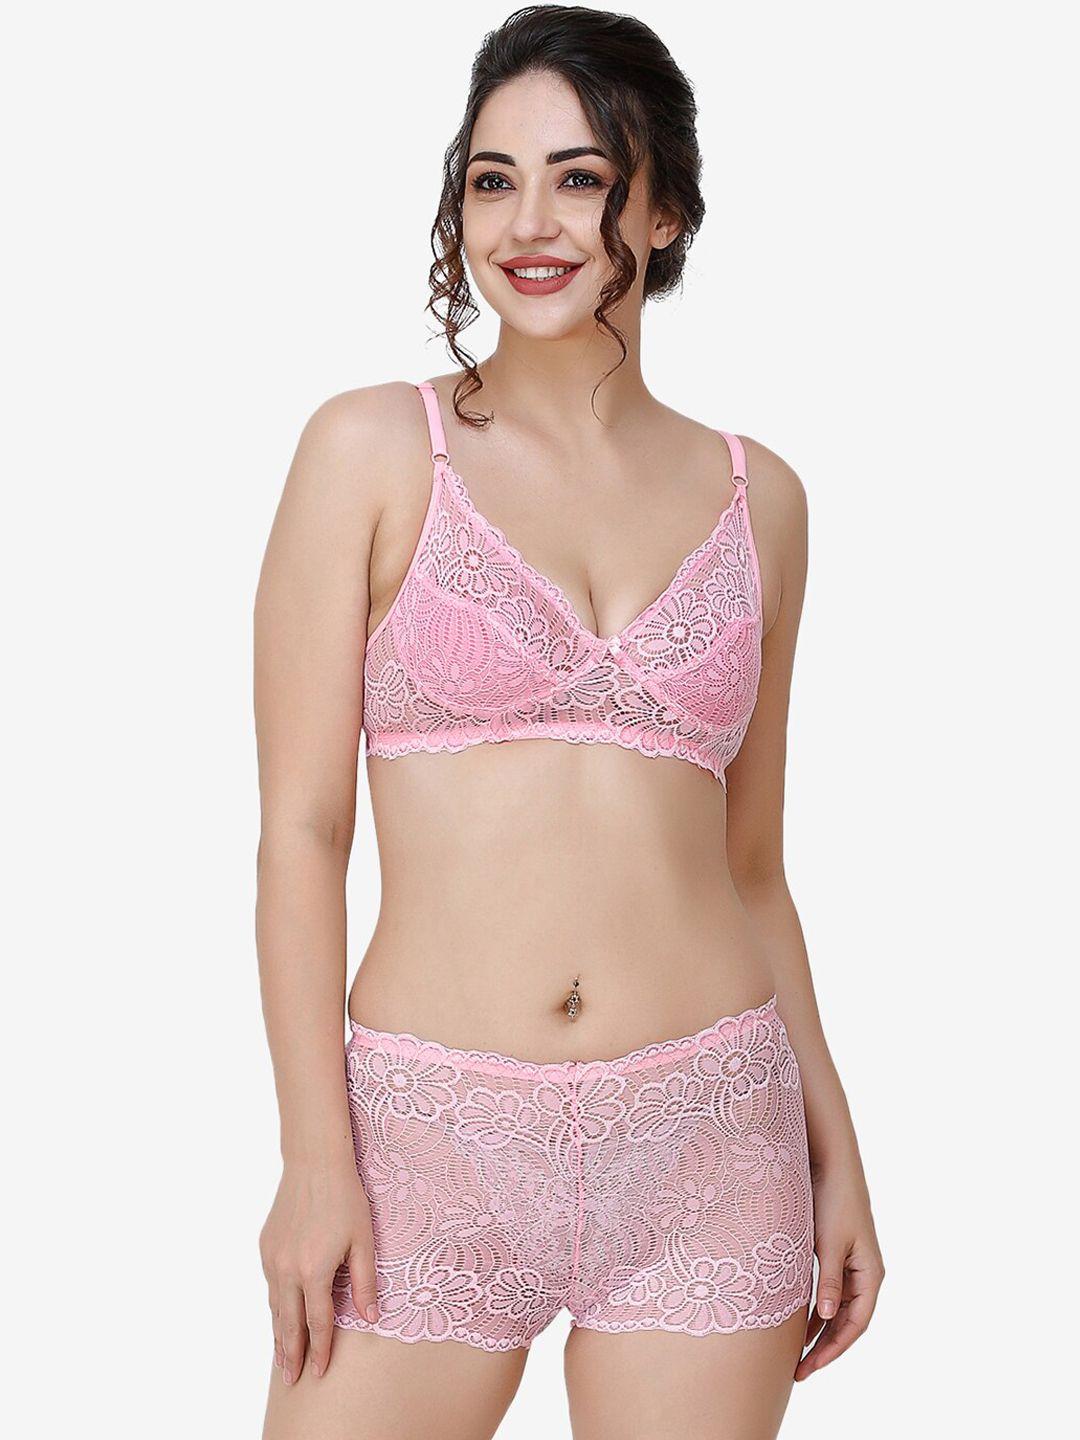 docare women pink self-design lace cotton lingerie set